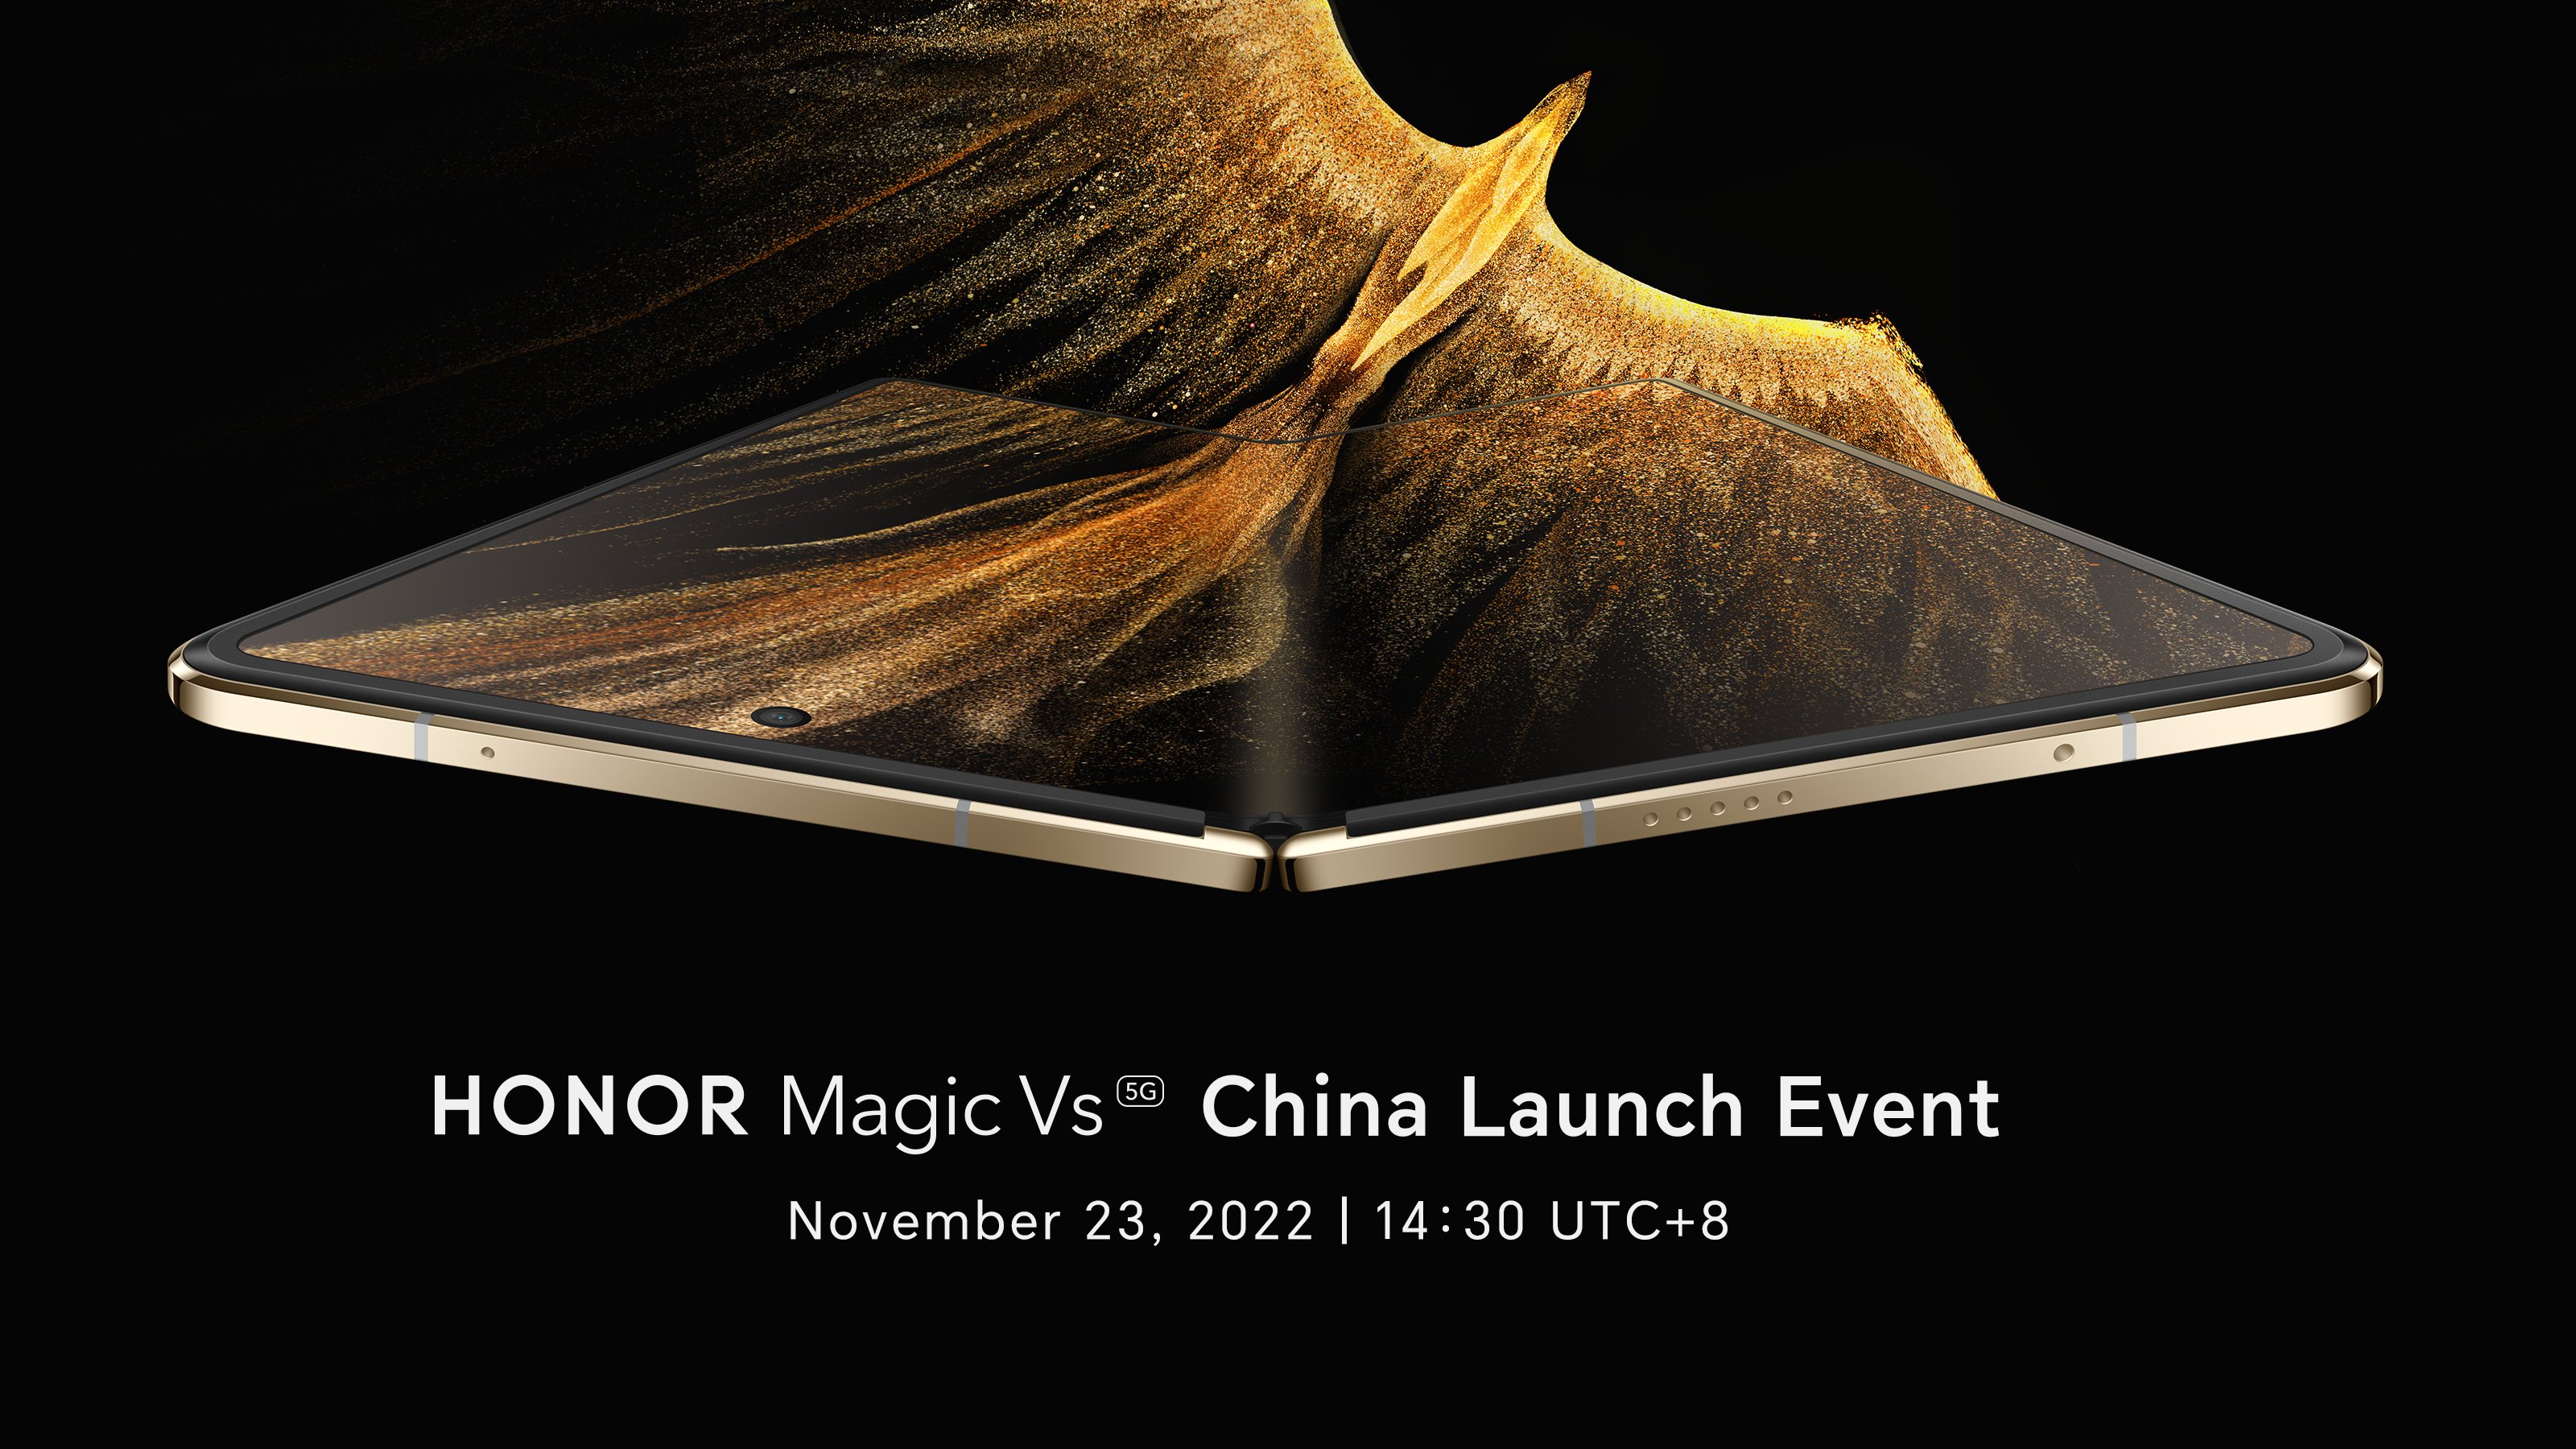 To już oficjalne: Honor zaprezentuje składany smartfon Magic Vs podczas premiery 23 listopada